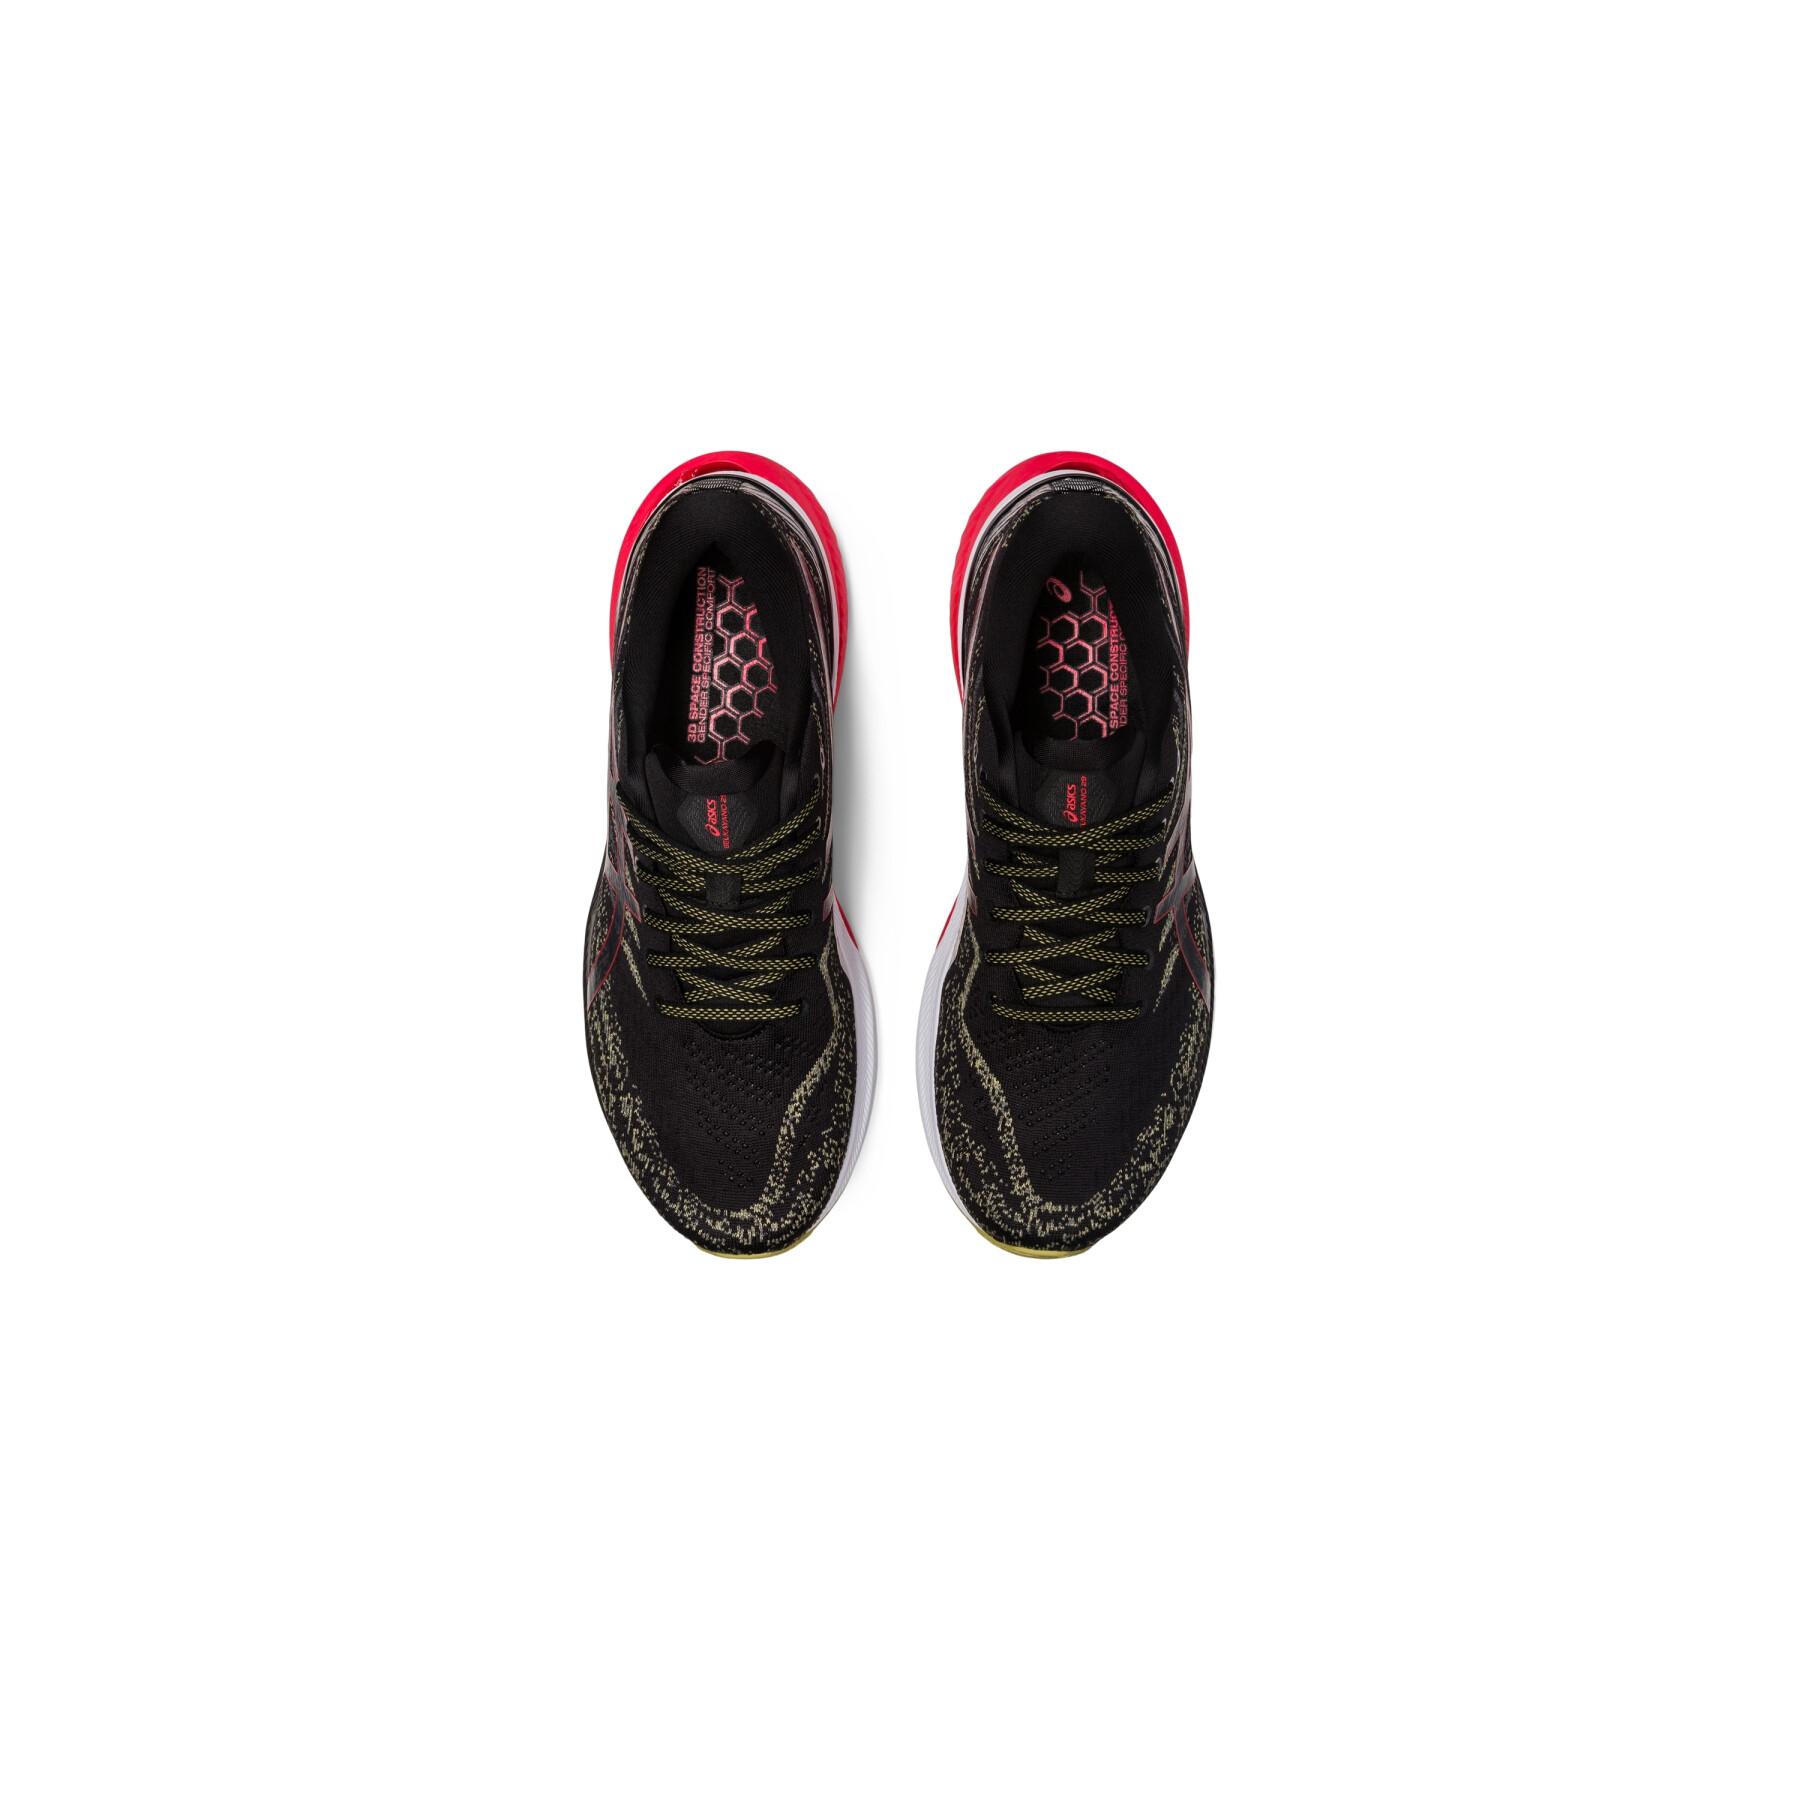 Running shoes Asics Gel-Kayano 29